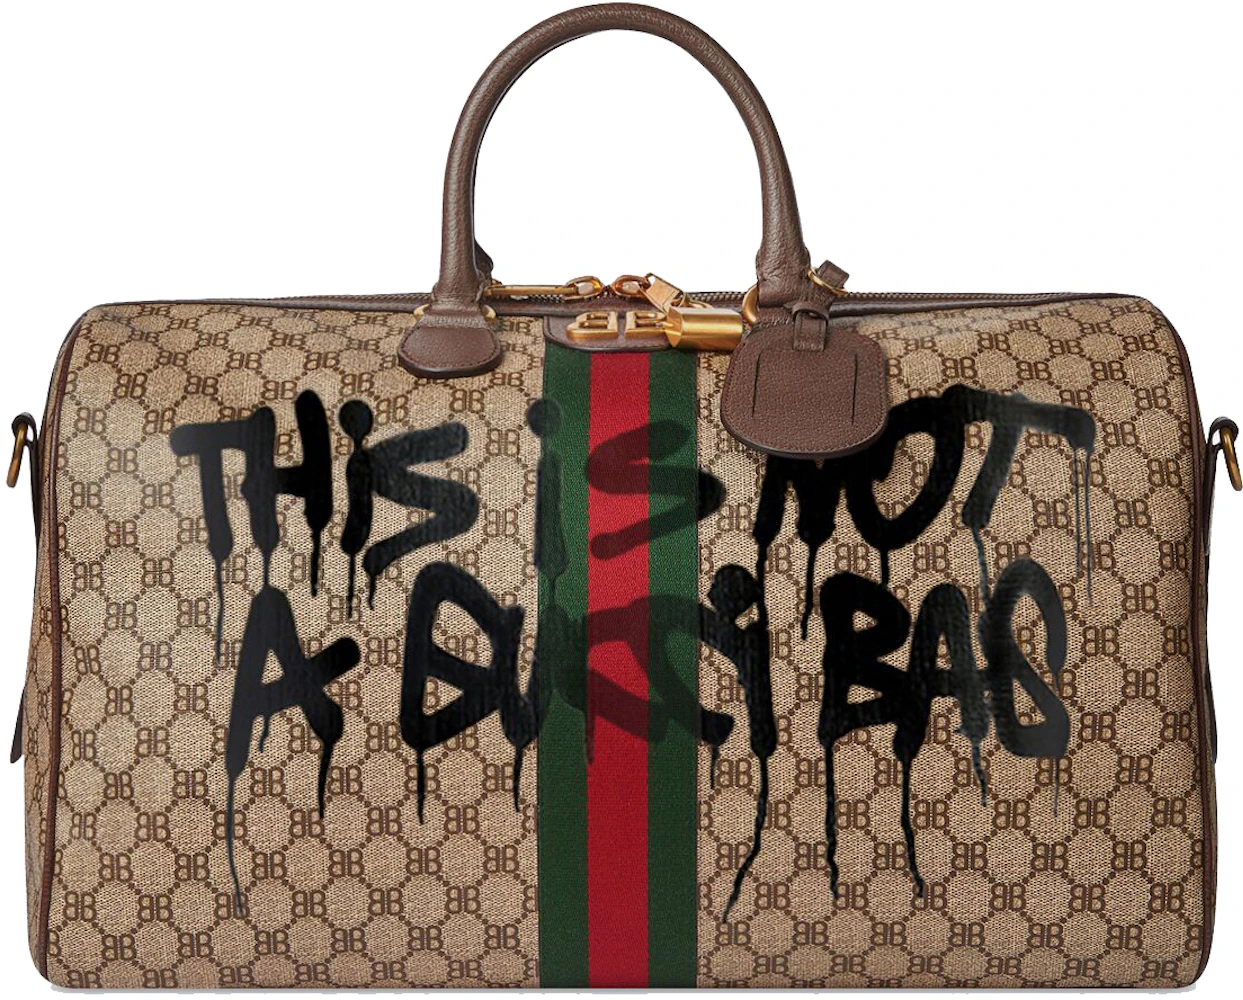 Gucci x Balenciaga The Hacker Project Medium Neo Classic Bag